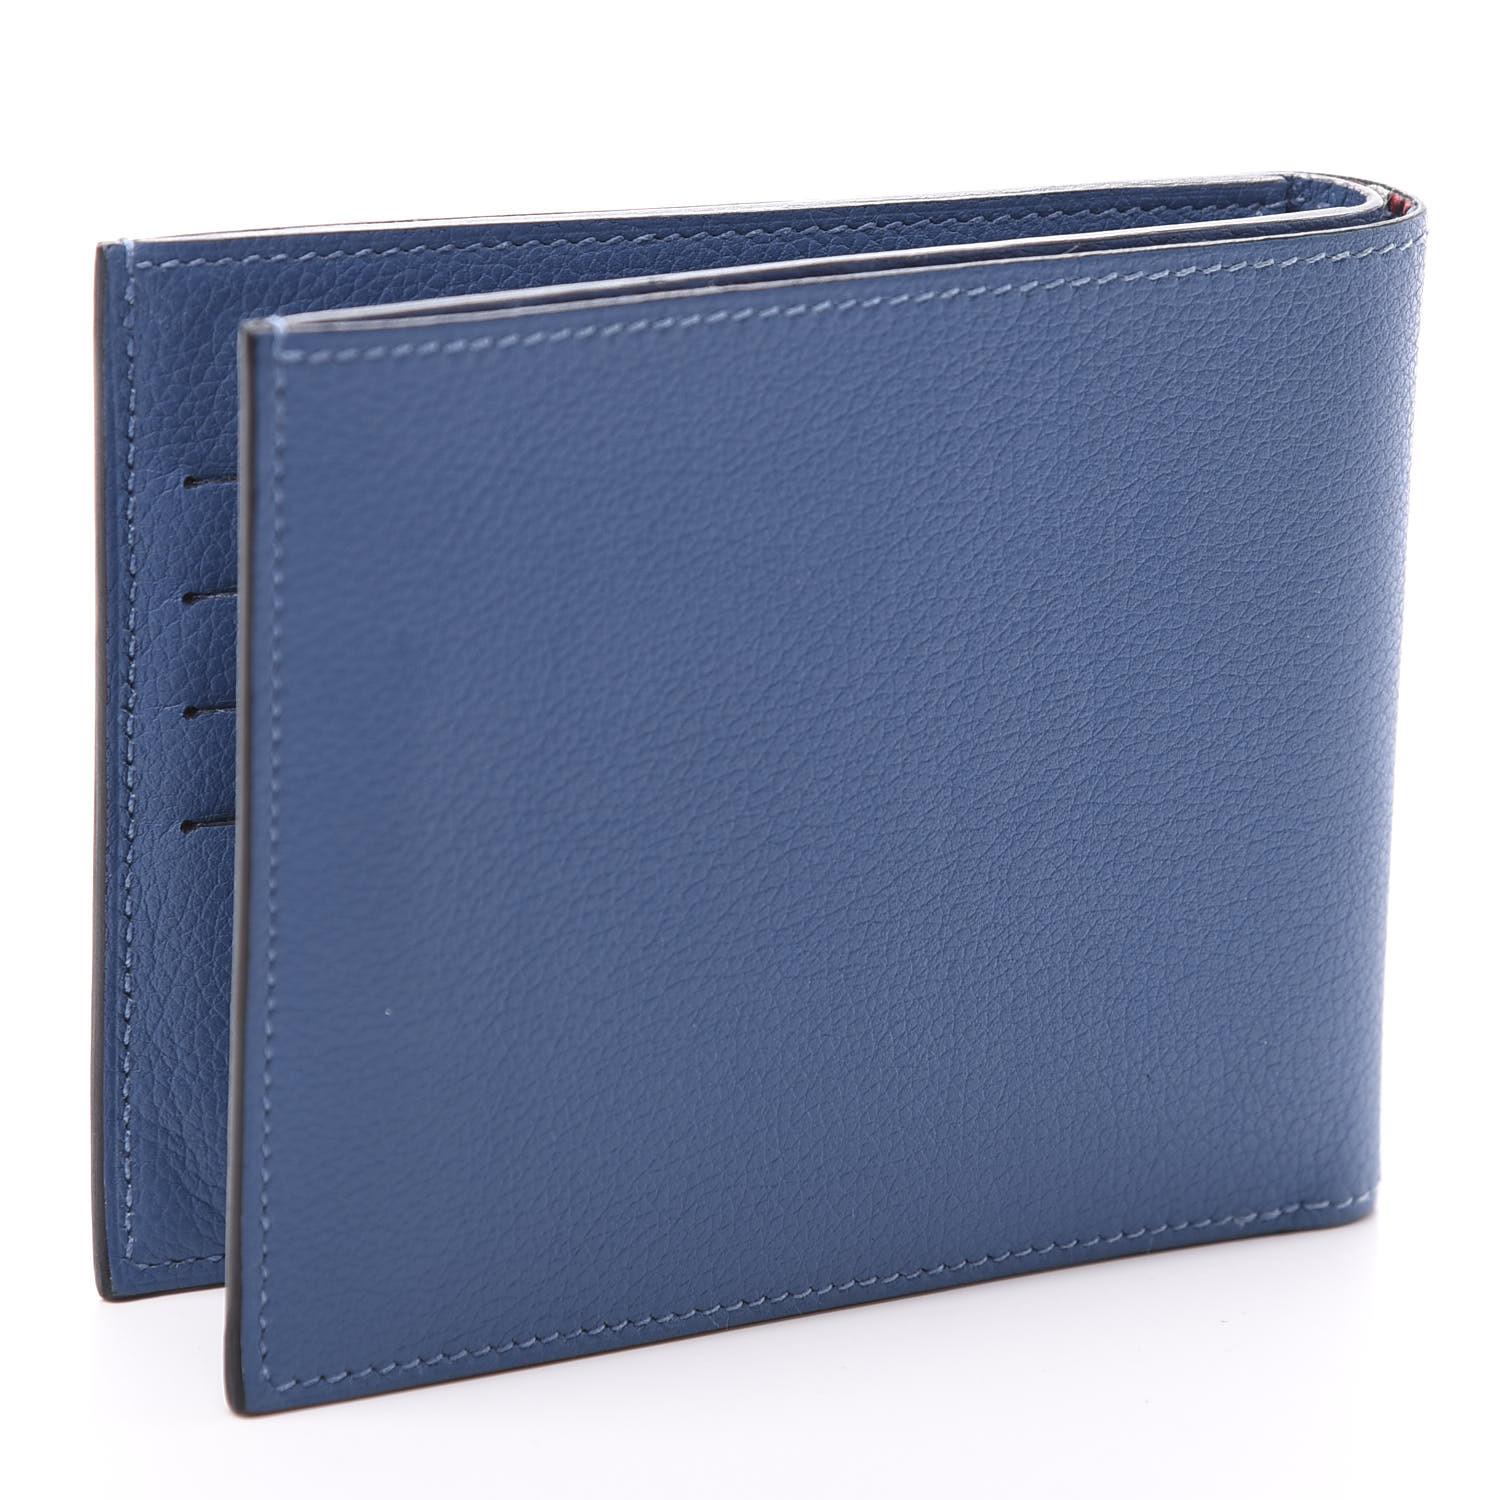 HERMES Evercolor Citizen Twill Compact Wallet Bleu de Galice Rouge ...